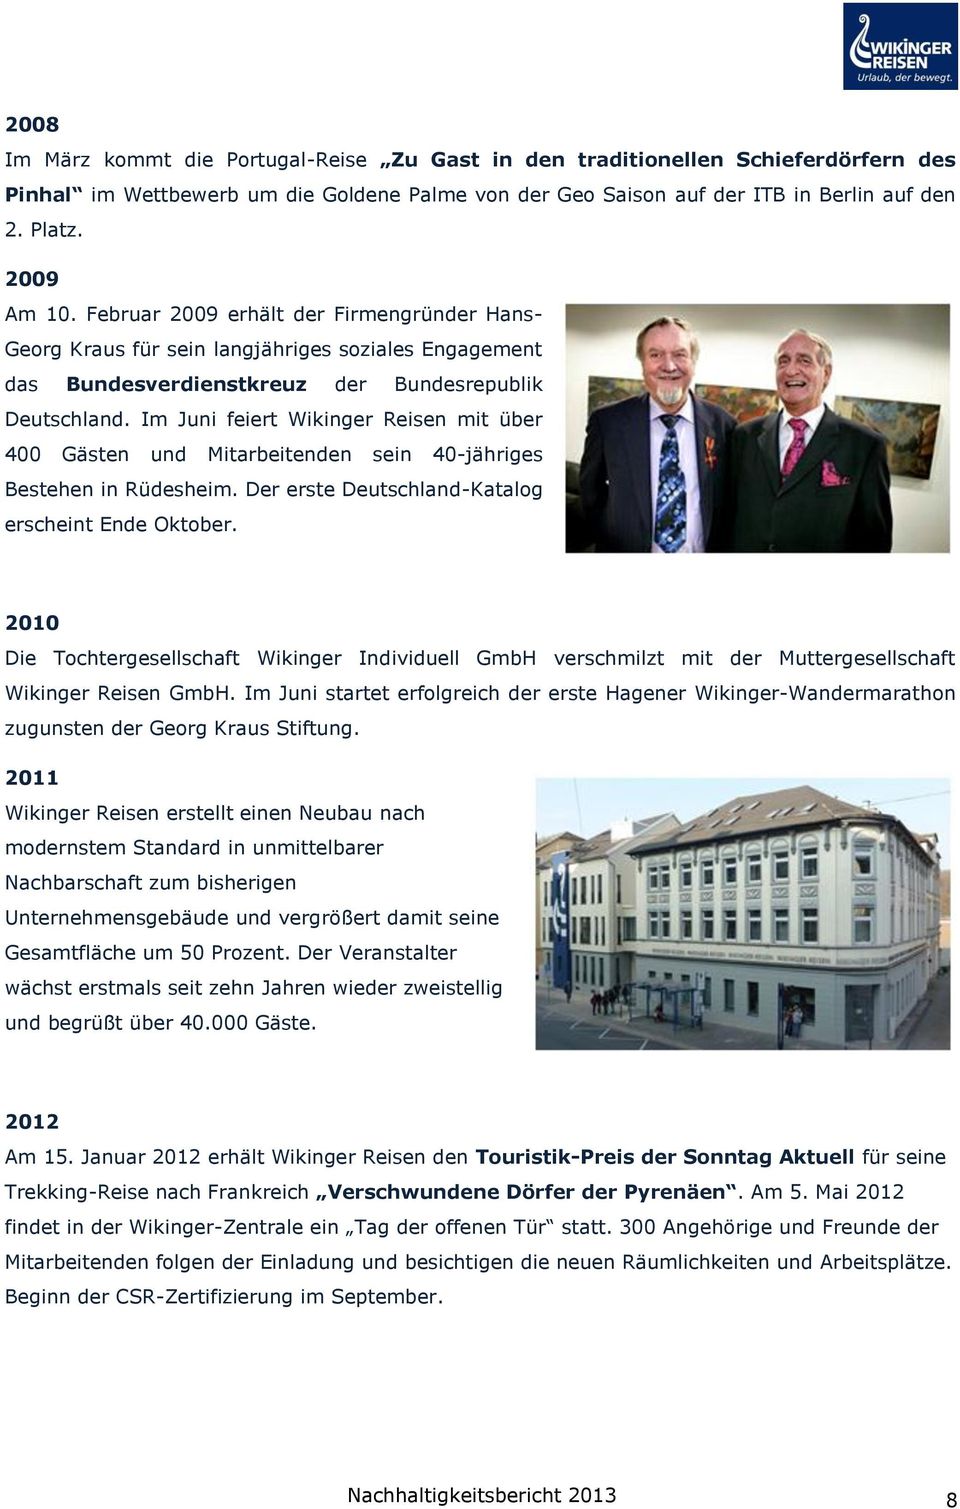 Im Juni feiert Wikinger Reisen mit über 400 Gästen und Mitarbeitenden sein 40-jähriges Bestehen in Rüdesheim. Der erste Deutschland-Katalog erscheint Ende Oktober.